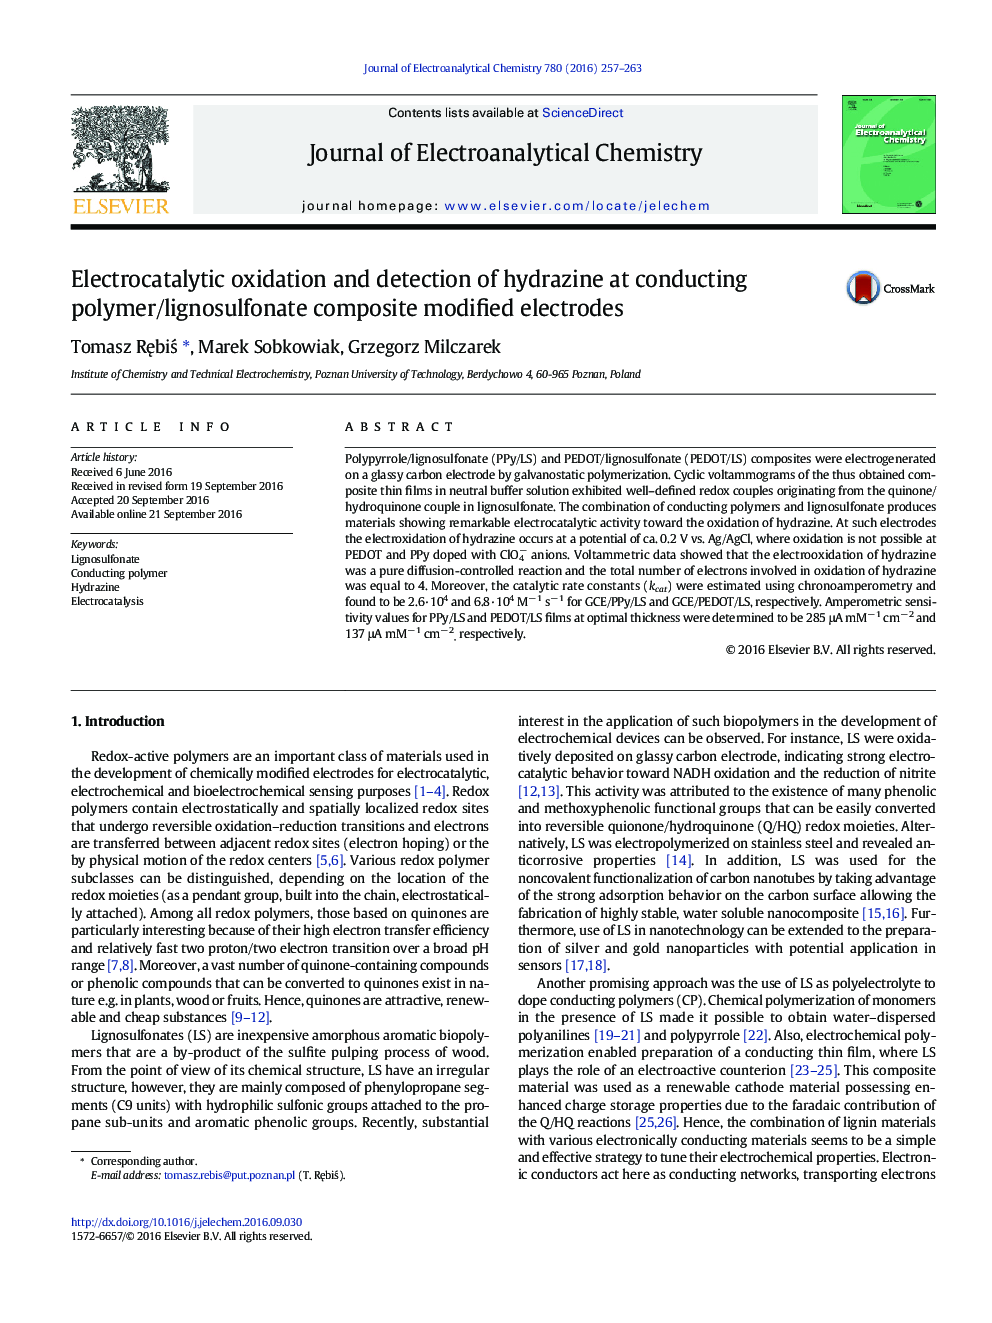 اکسیداسیون الکتروکاتالیتی و تشخیص هیدرازین در الکترودهای اصلاح کامپوزیت پلیمر / لیگنوسولفونات 